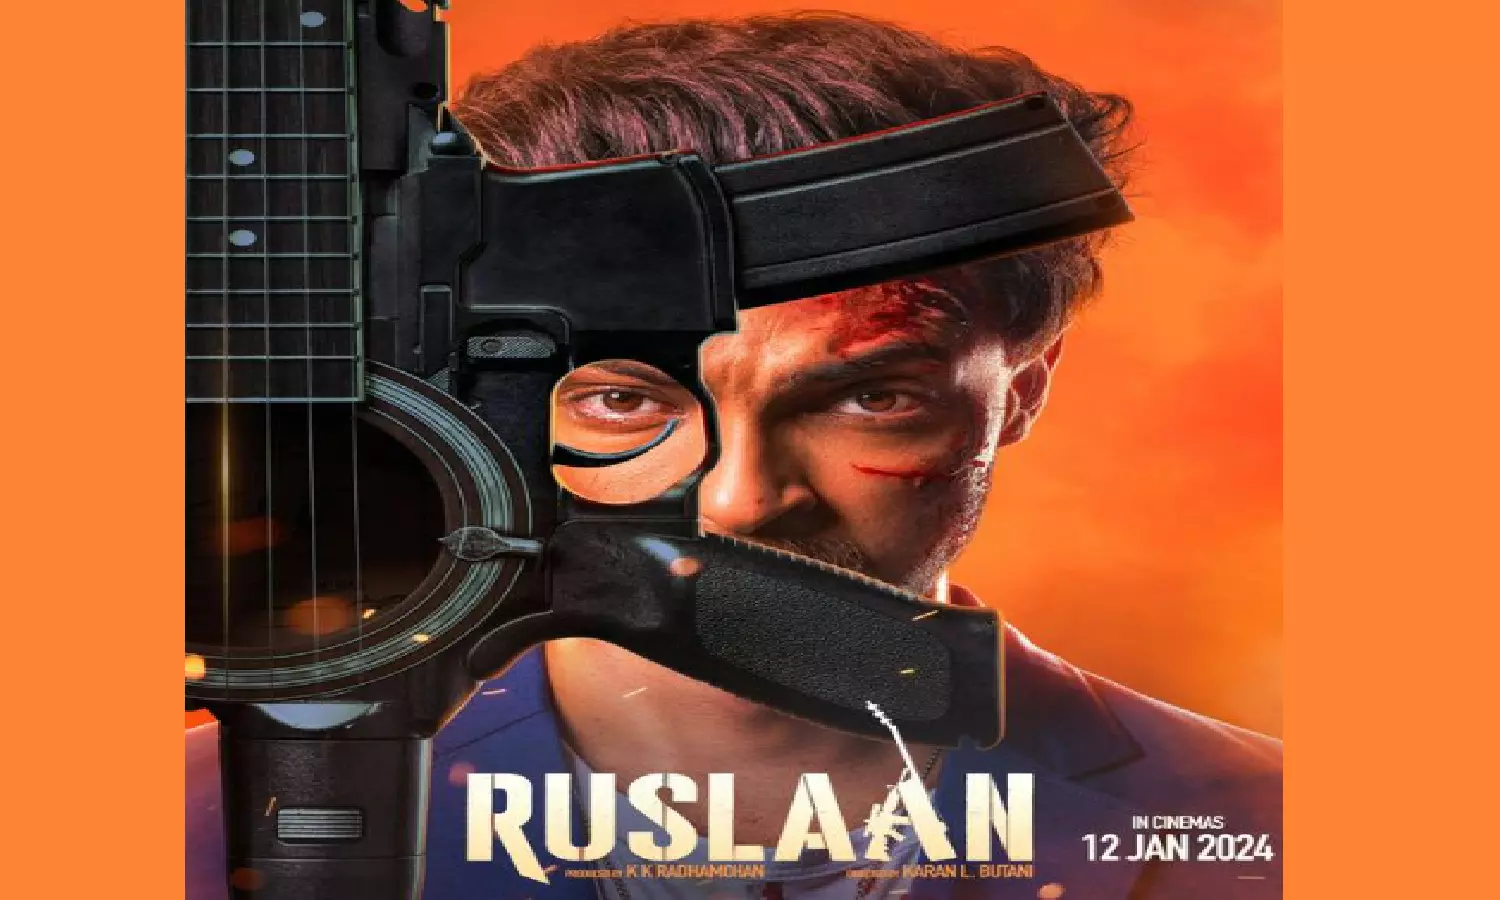 Ruslaan Teaser: आयुष शर्मा की एक्शन थ्रिलर  रुसलान  का प्री-टीजर हुआ ऑउट, जानिए कब रिलीज होगी फिल्म